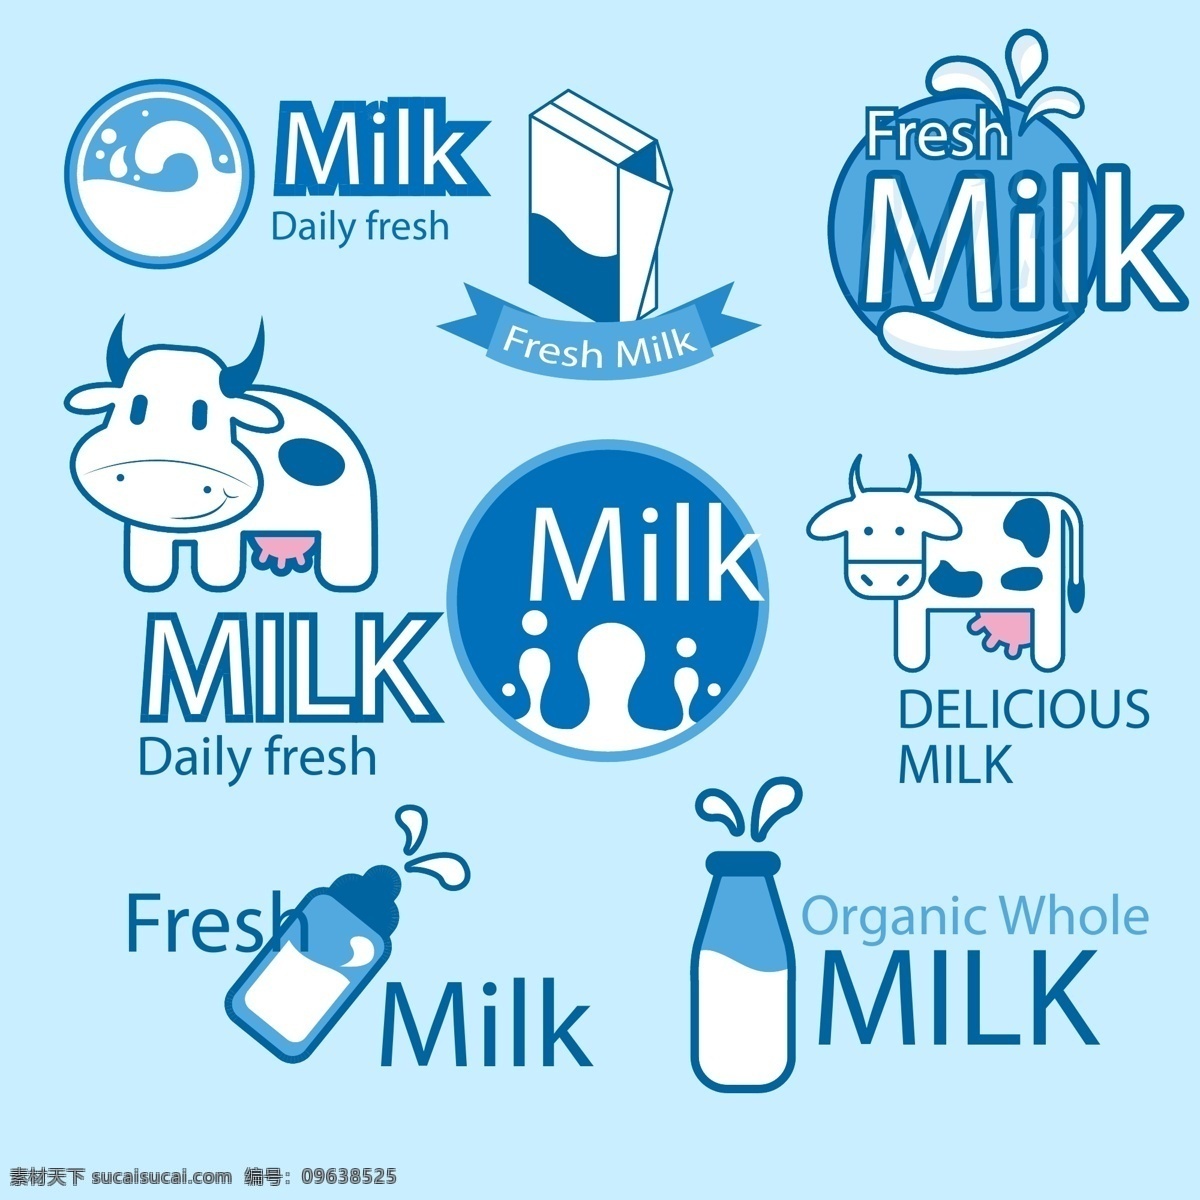 鲜奶包装标签 牛奶 奶牛 标签 徽章 卡通牛 奶牛图标 鲜奶 奶瓶 牛奶商标 设计品牌 国外品牌 商标设计 牛奶标签 图标 酸奶 乳酸菌 酸乳 卡通奶牛 包装设计